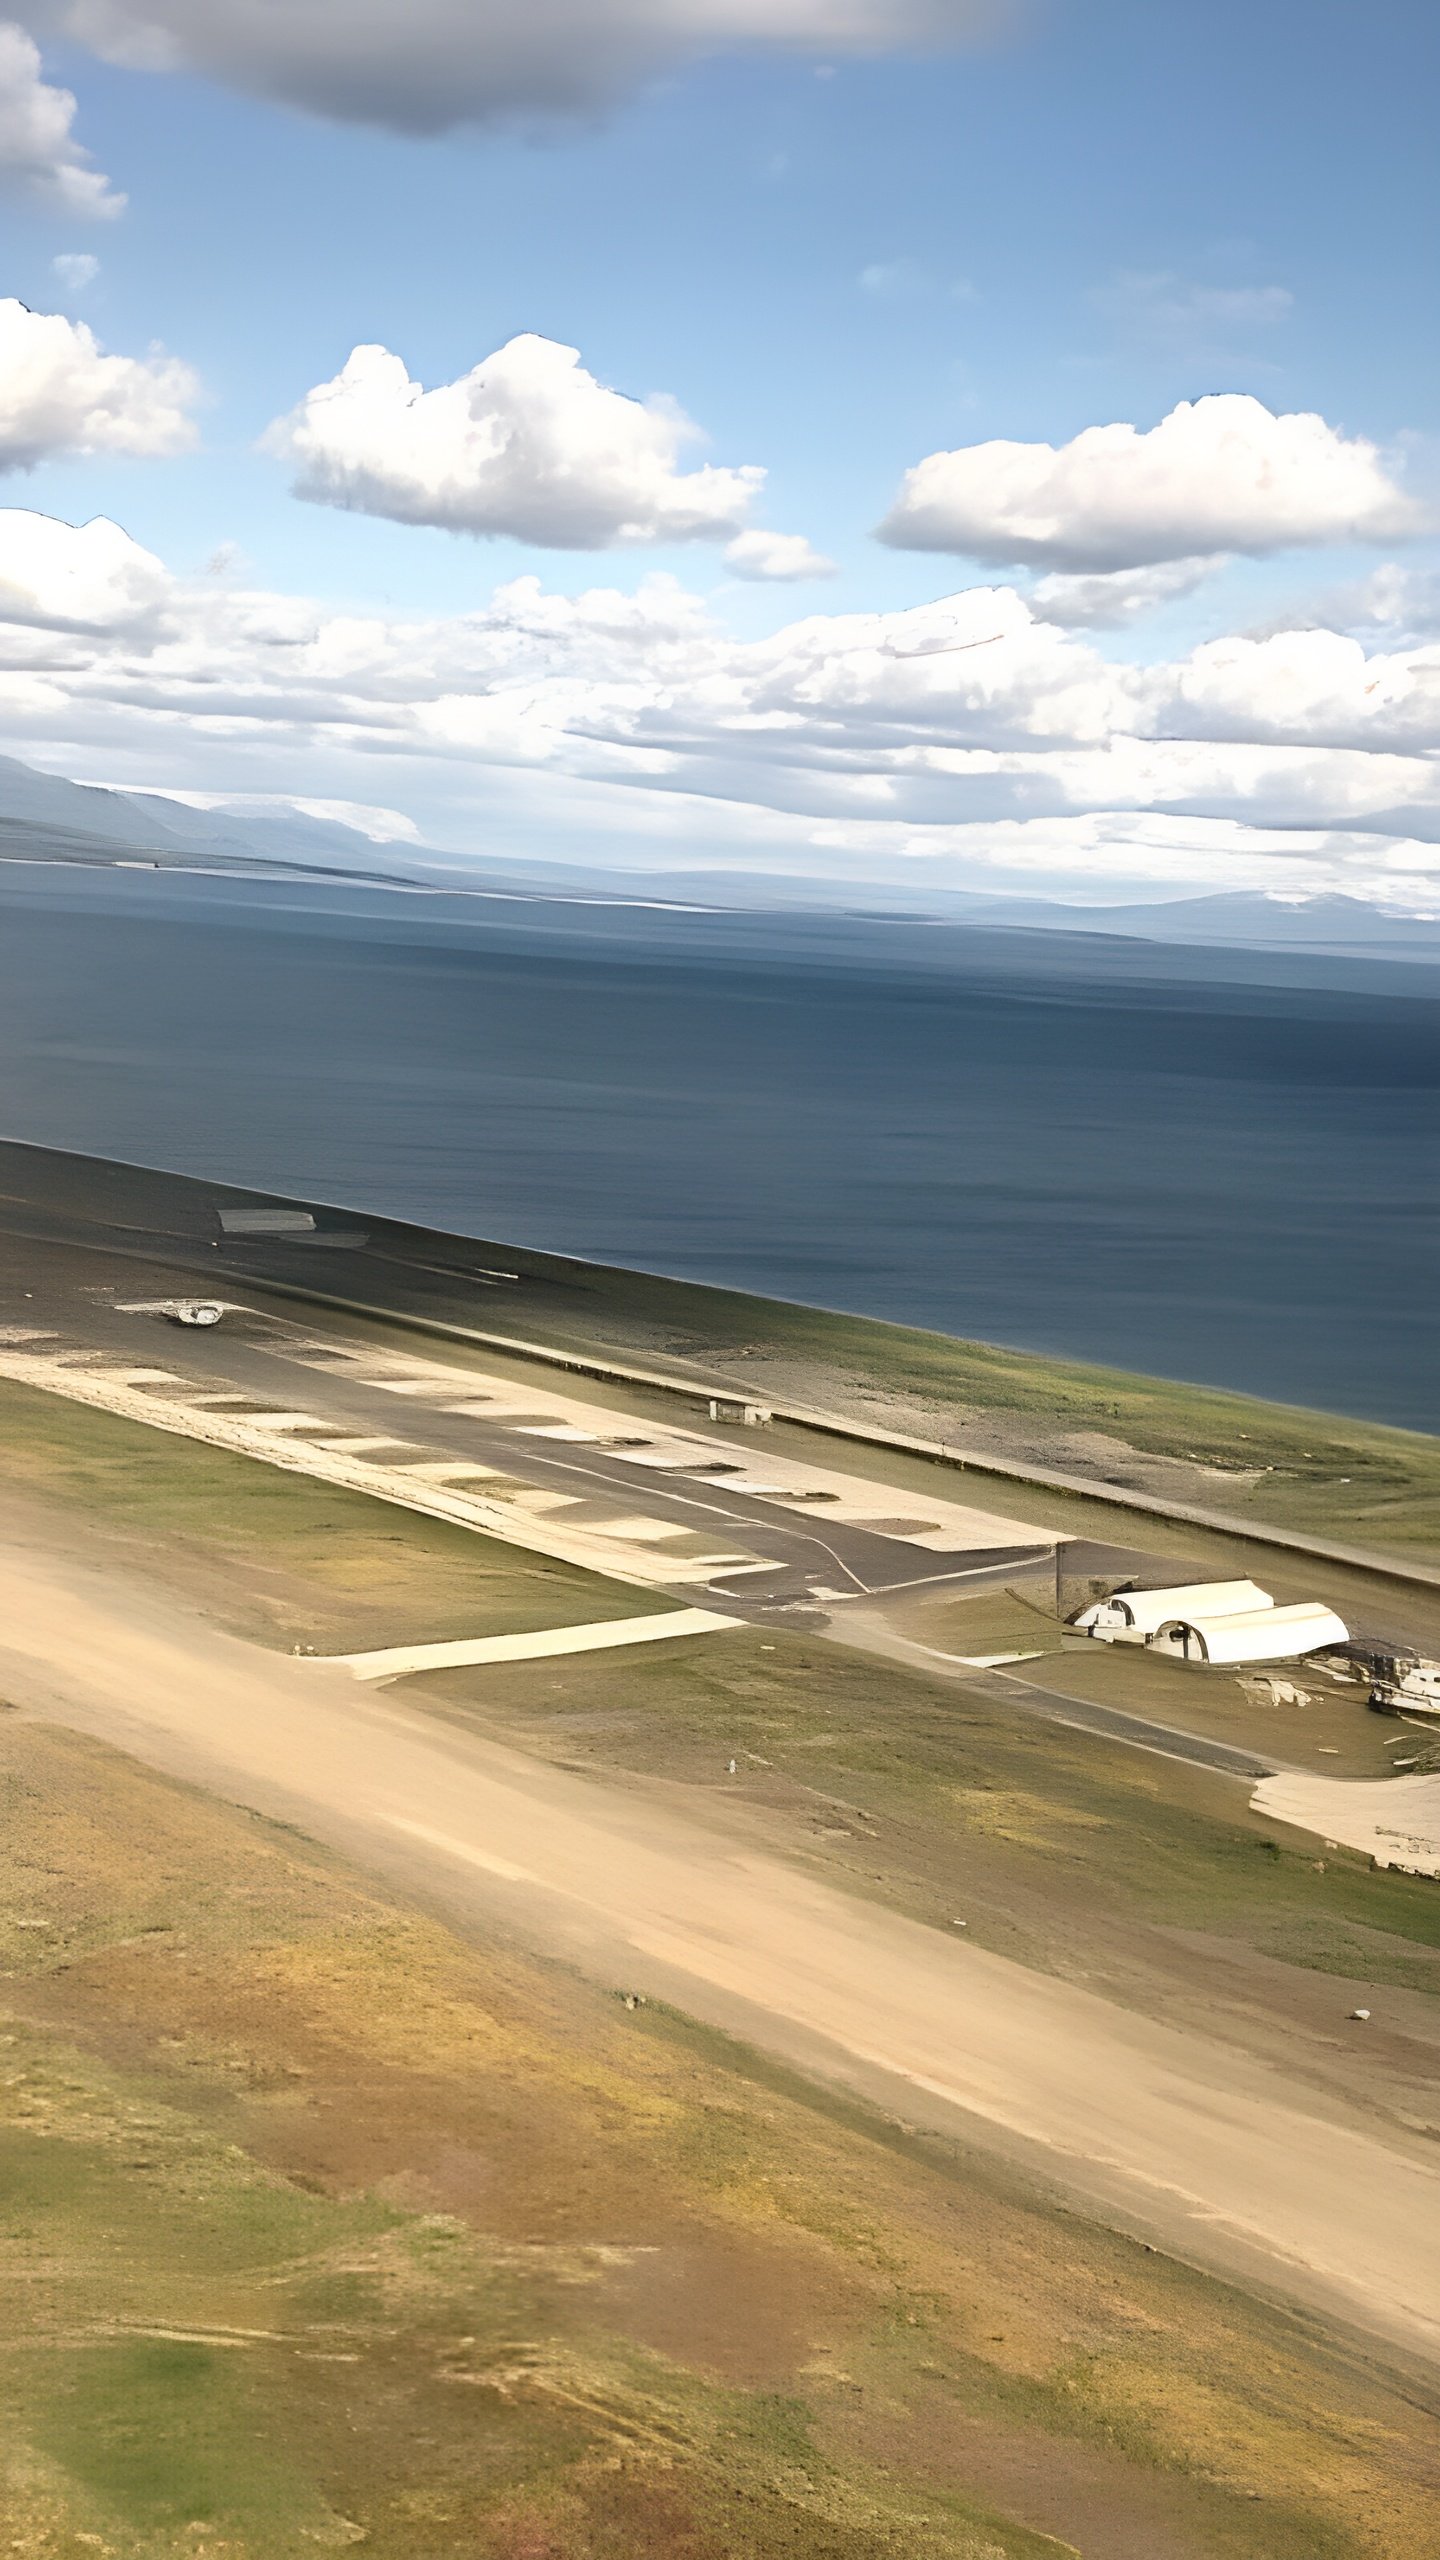 Реконструкция аэропортов в ДФО и Арктике: более 150 млрд рублей на обновление инфраструктуры